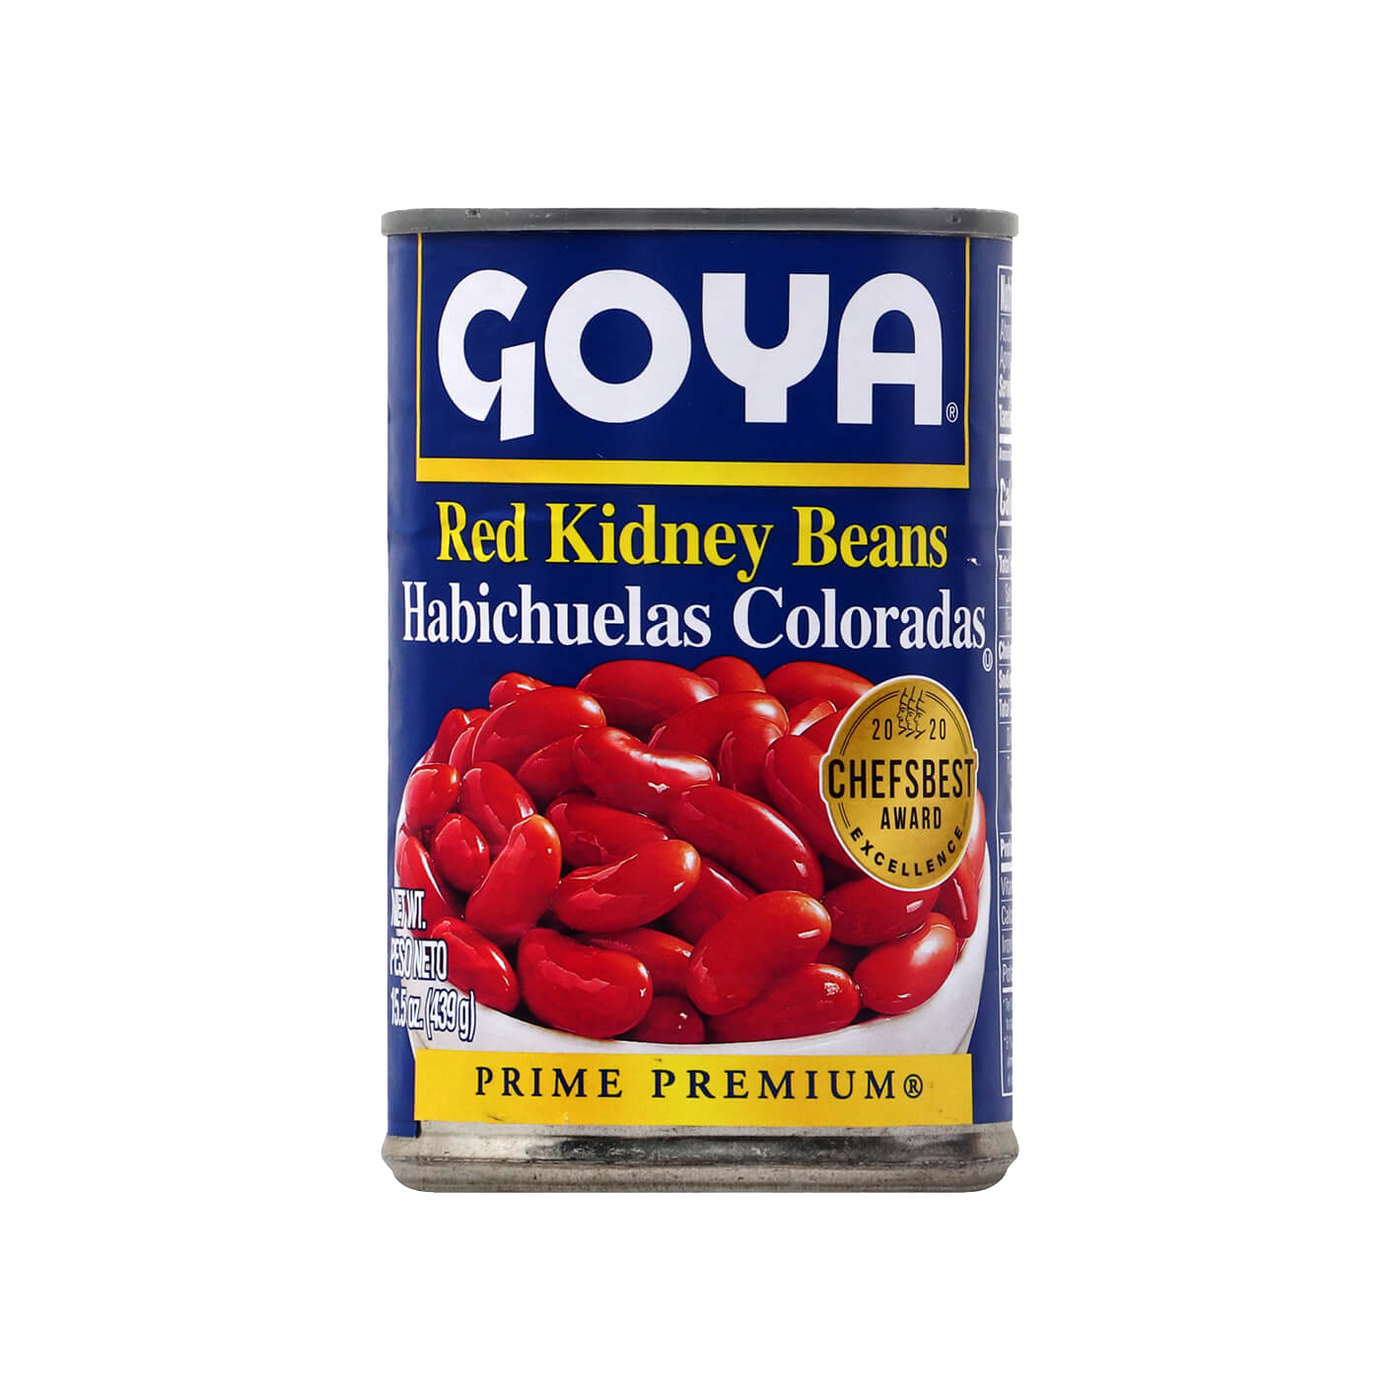   Goya Red Kidney Beans